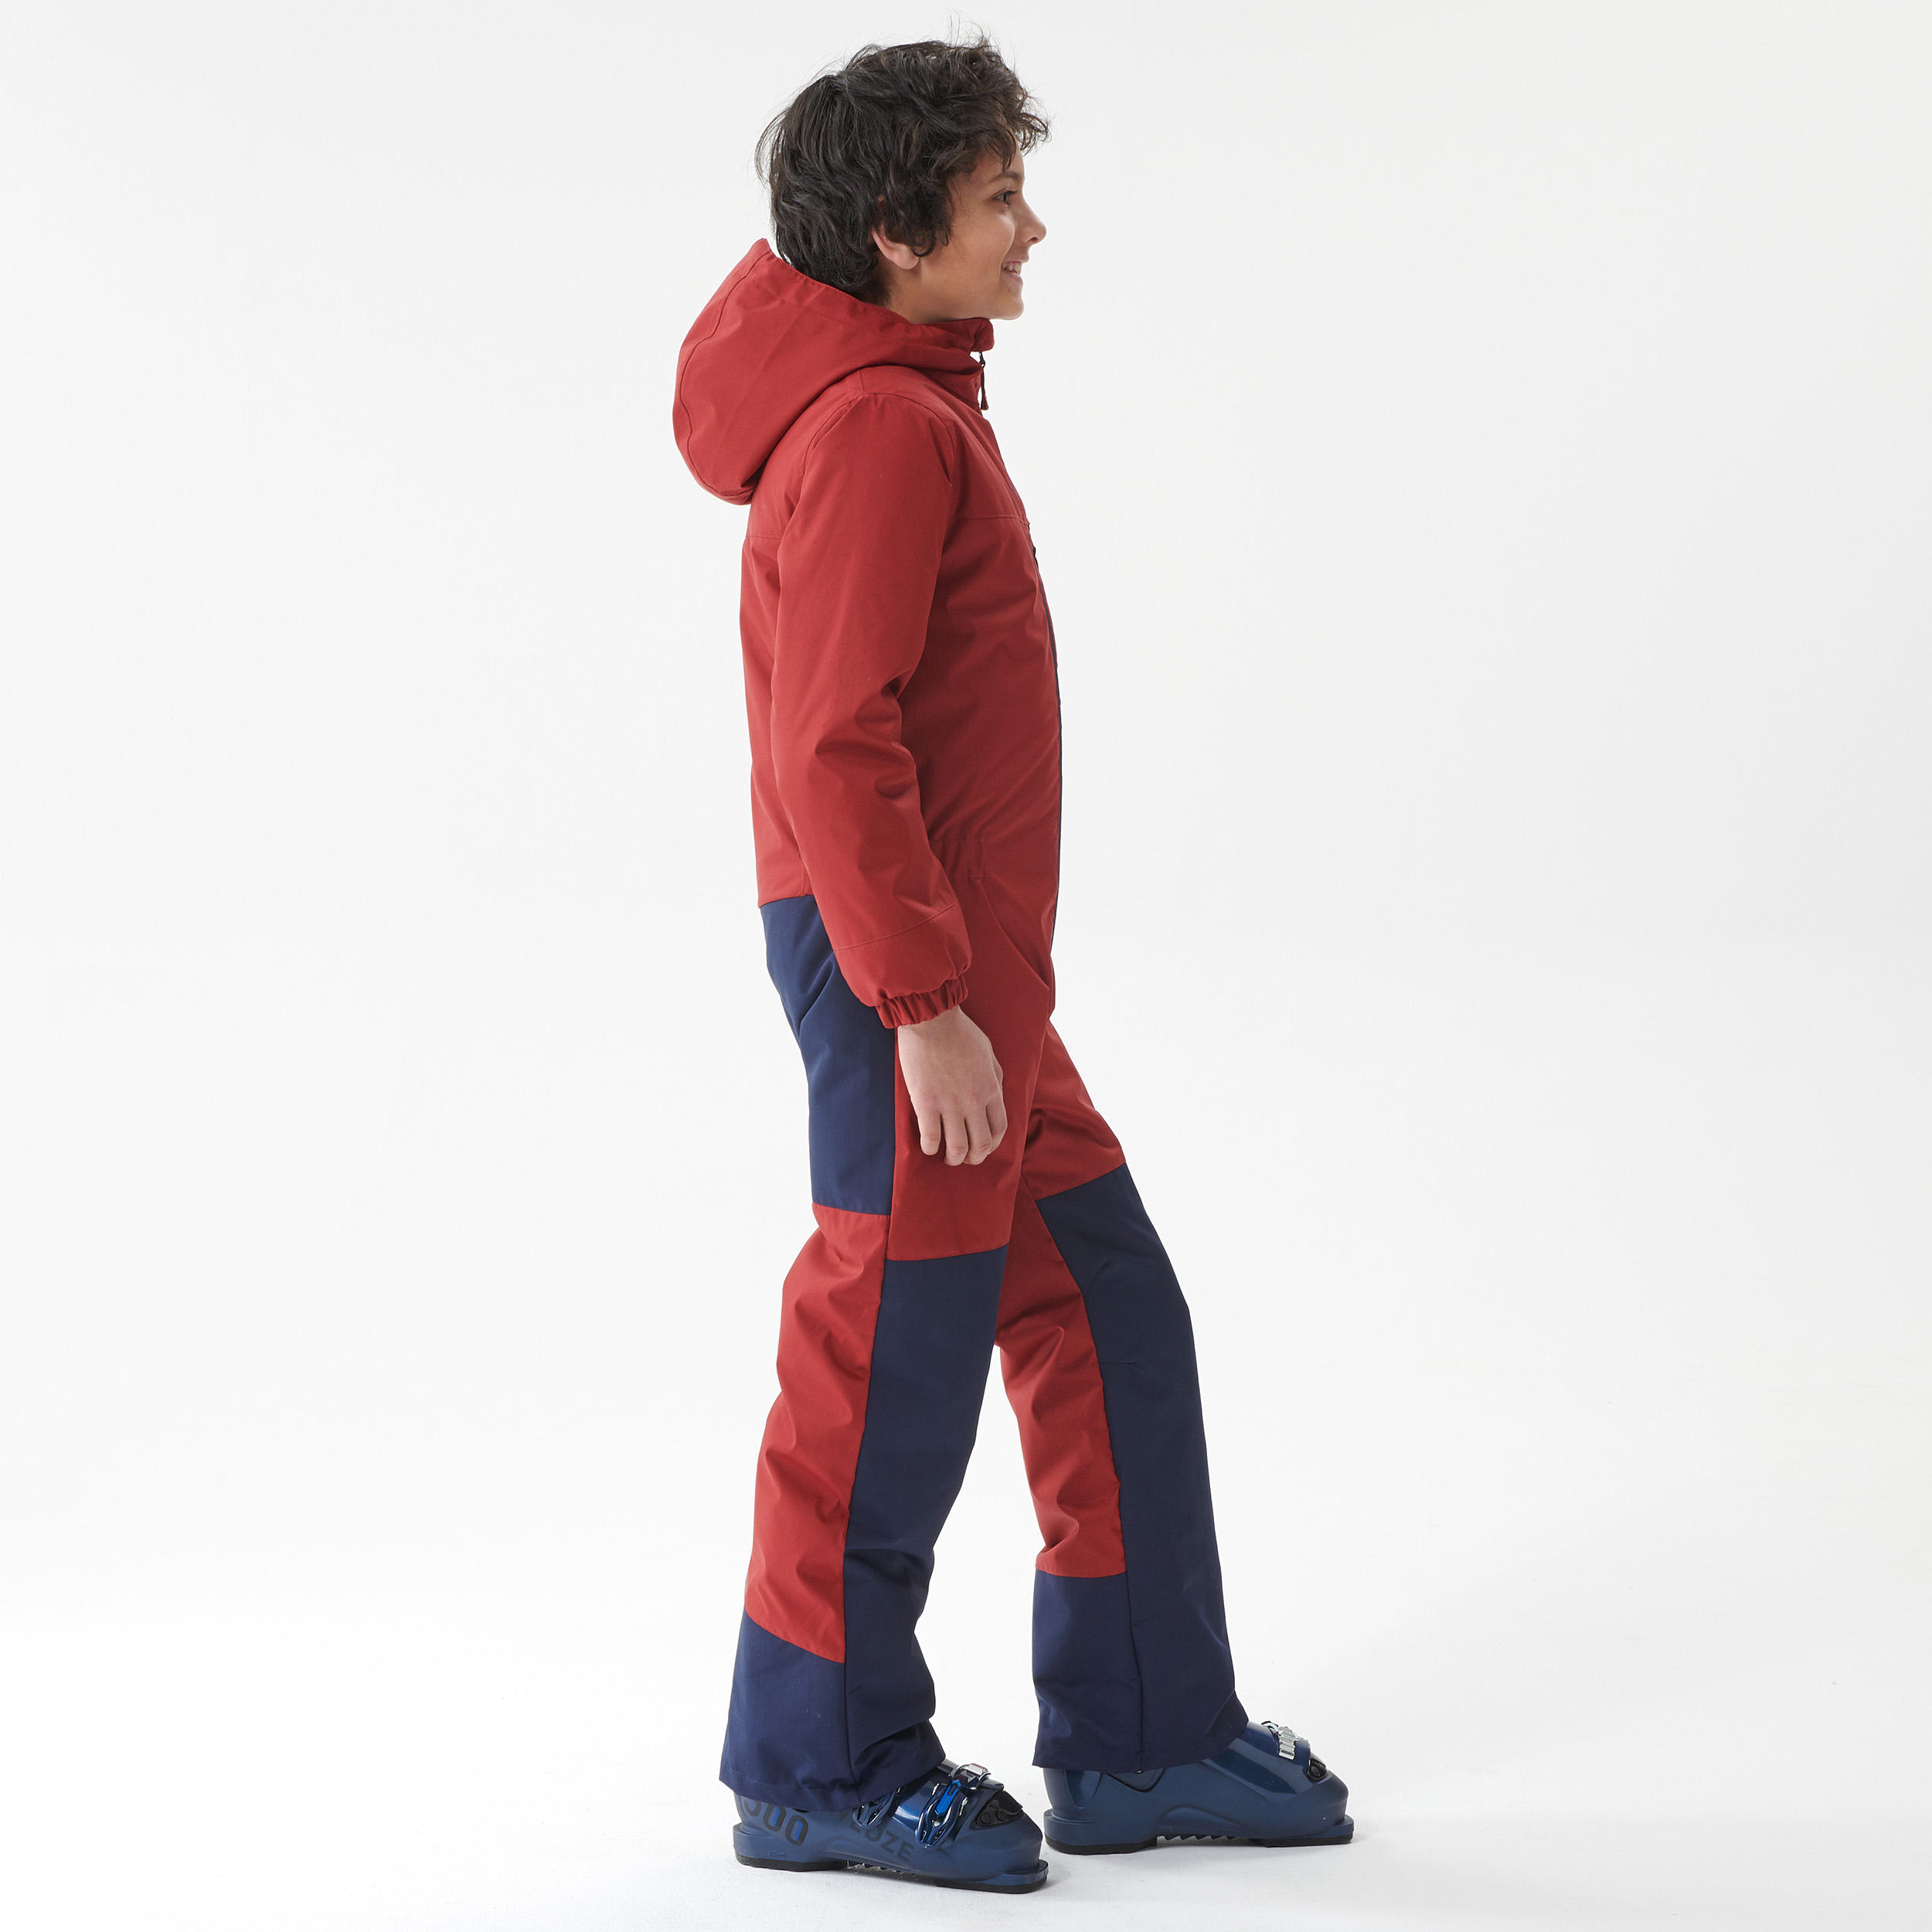 Kids' Snowsuit - 100 Red/Blue - burgundy red, steel blue - Wedze ...